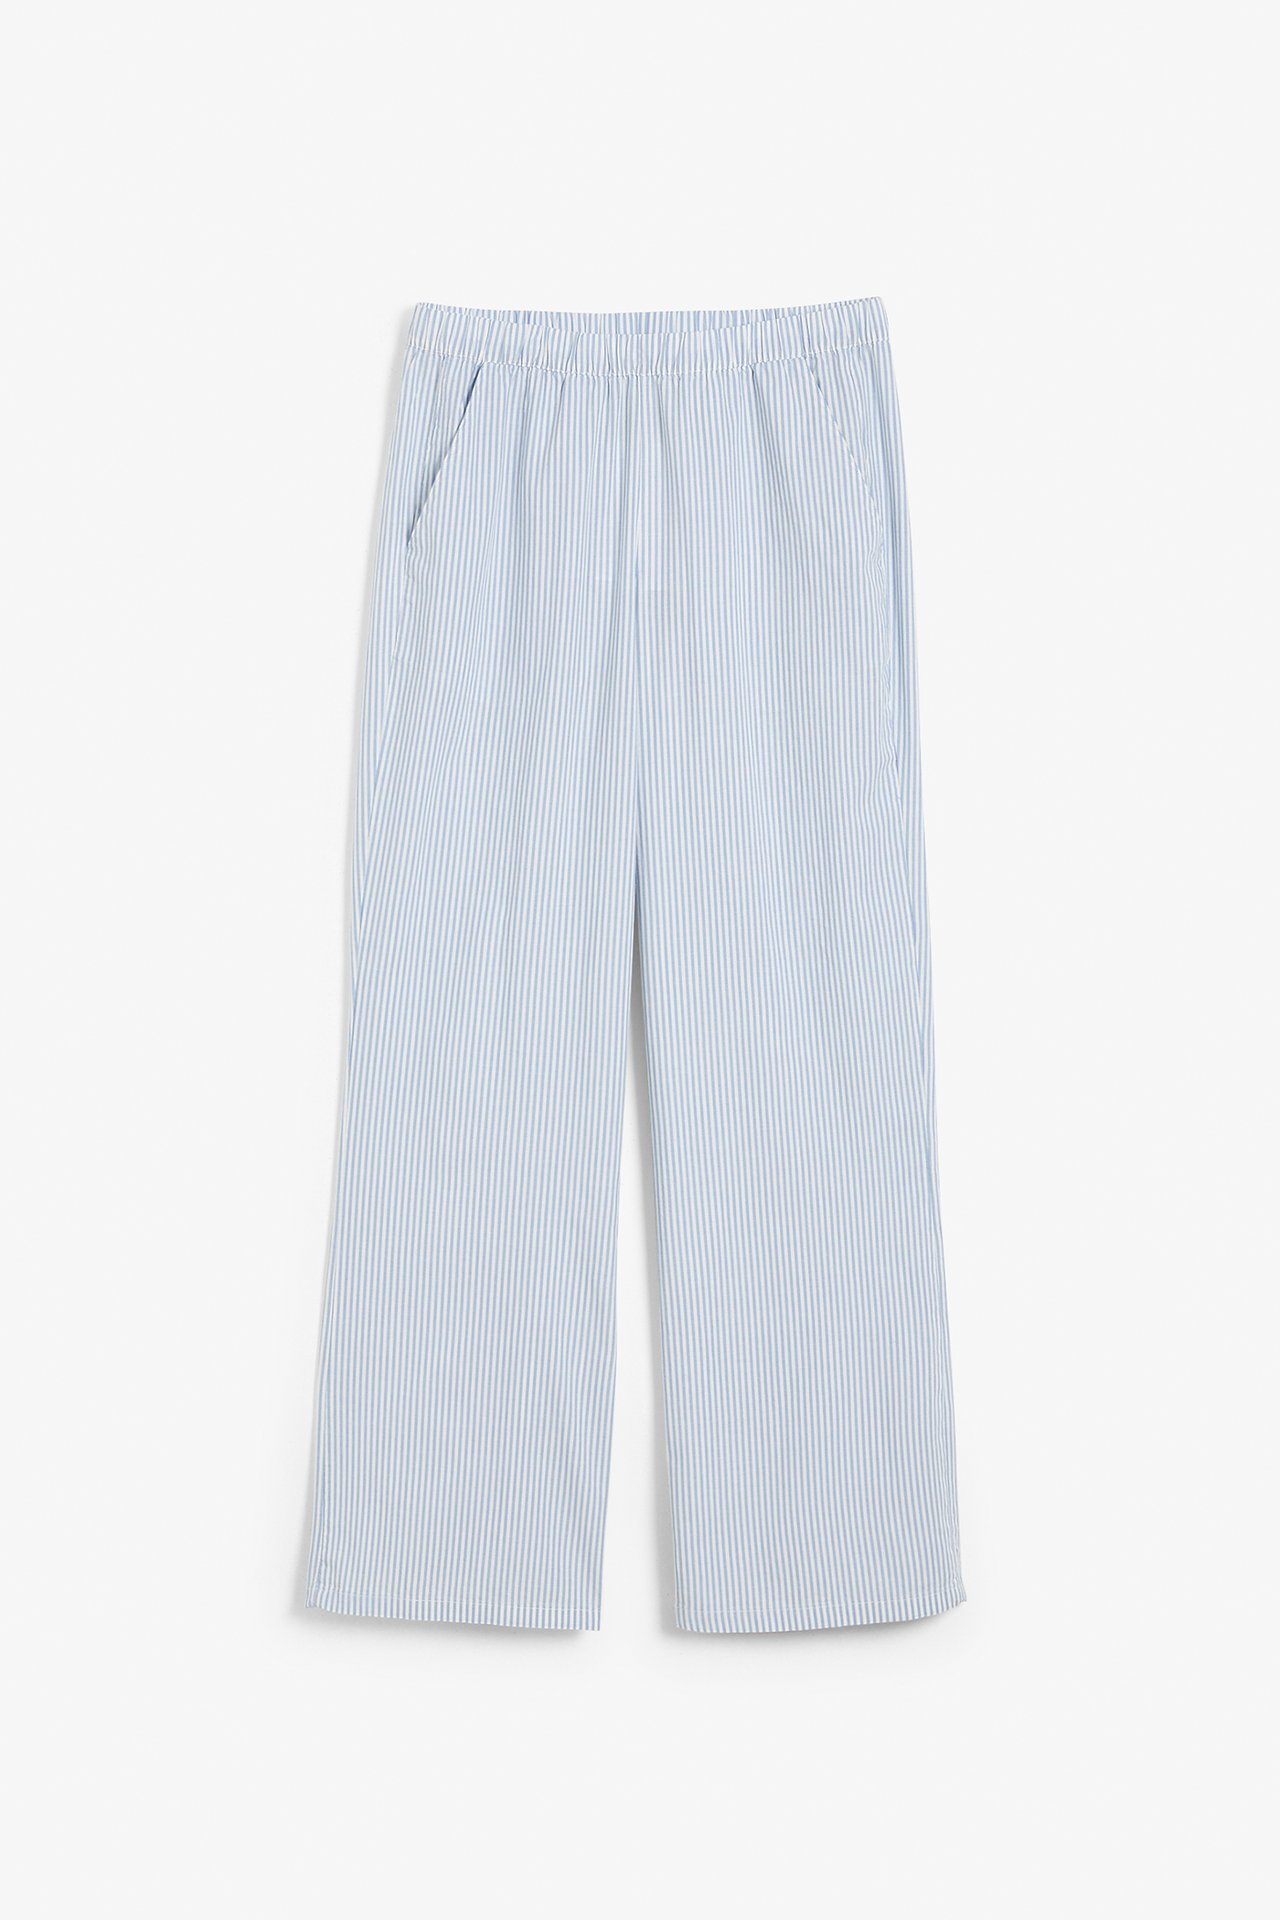 Pyjamasbukse Blå - null - 8